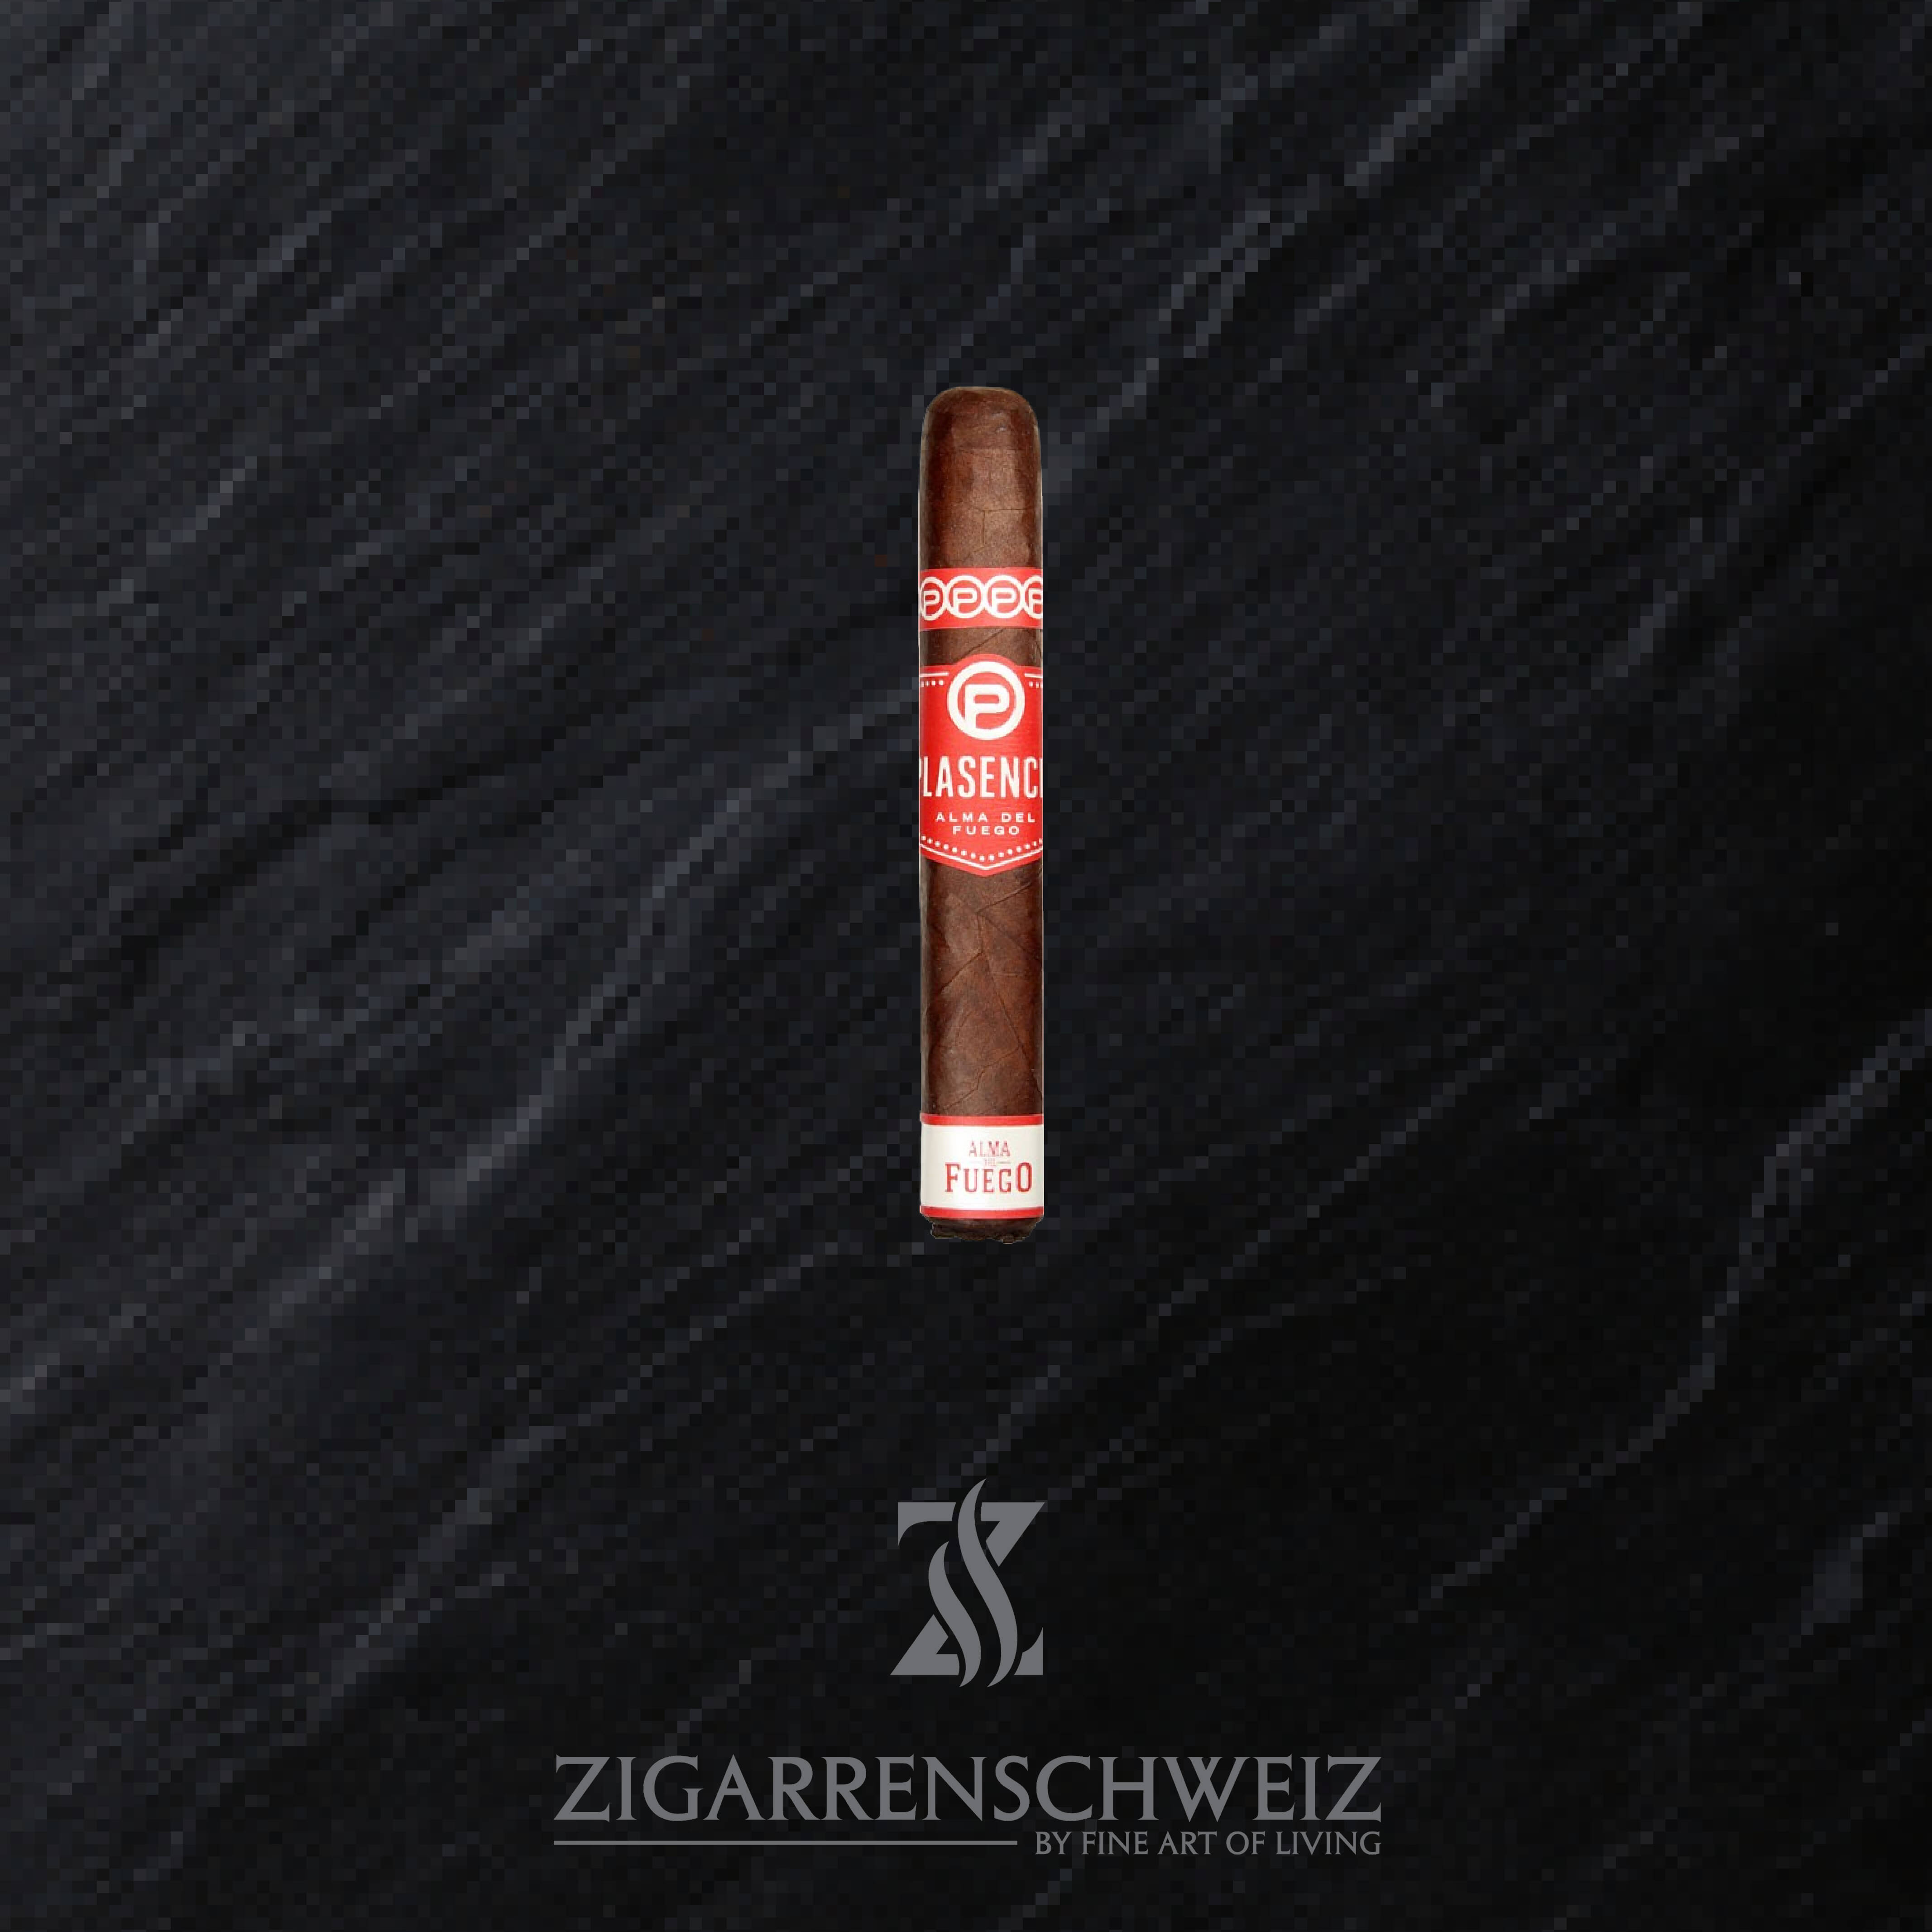 Plasencia Alma del Fuego Candente Zigarren im Robusto Format